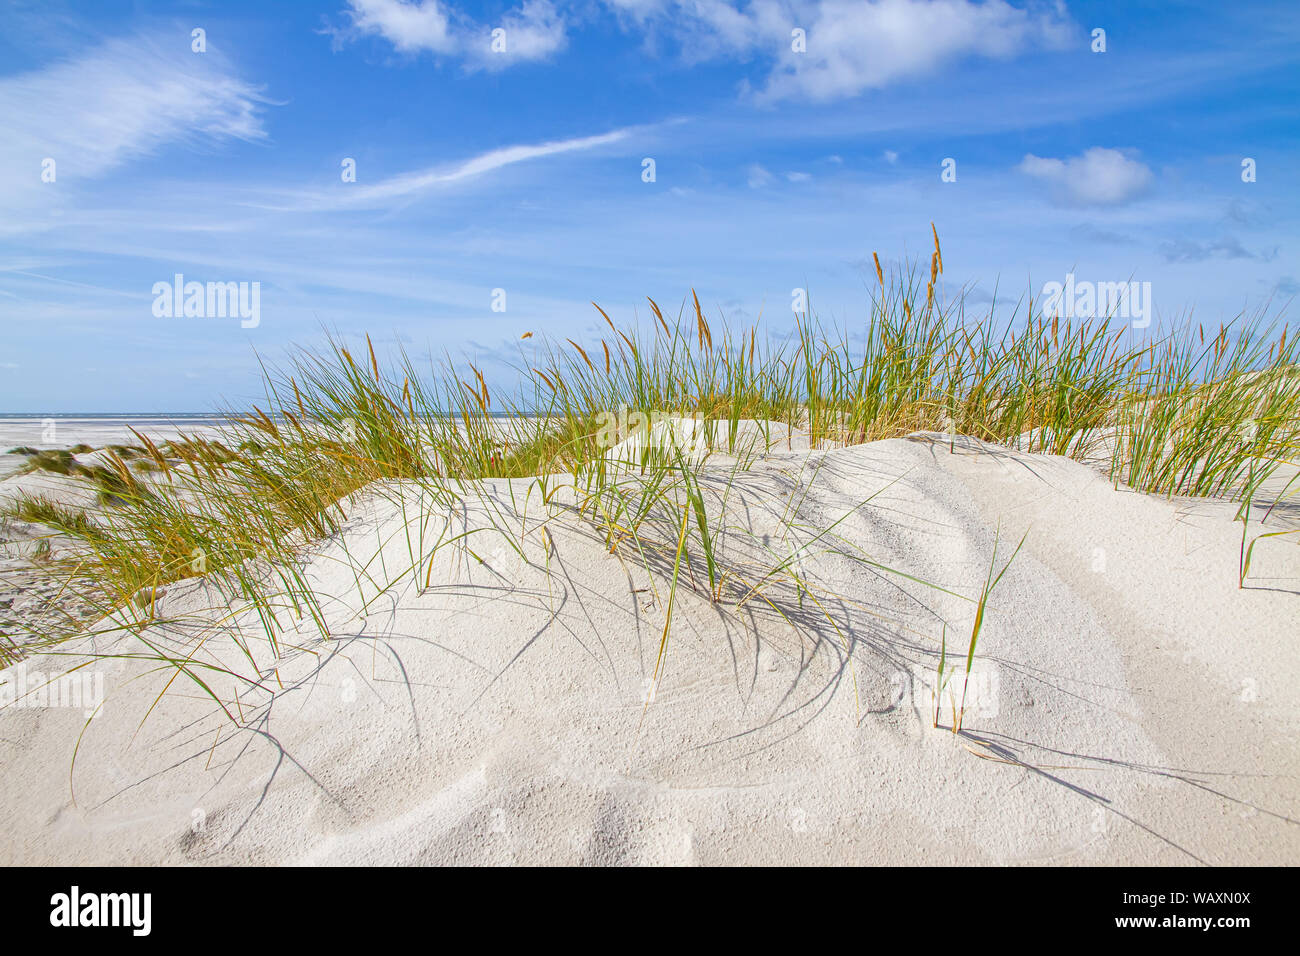 Dünen auf der Insel Amrum, Nordsee, Deutschland Stockfoto